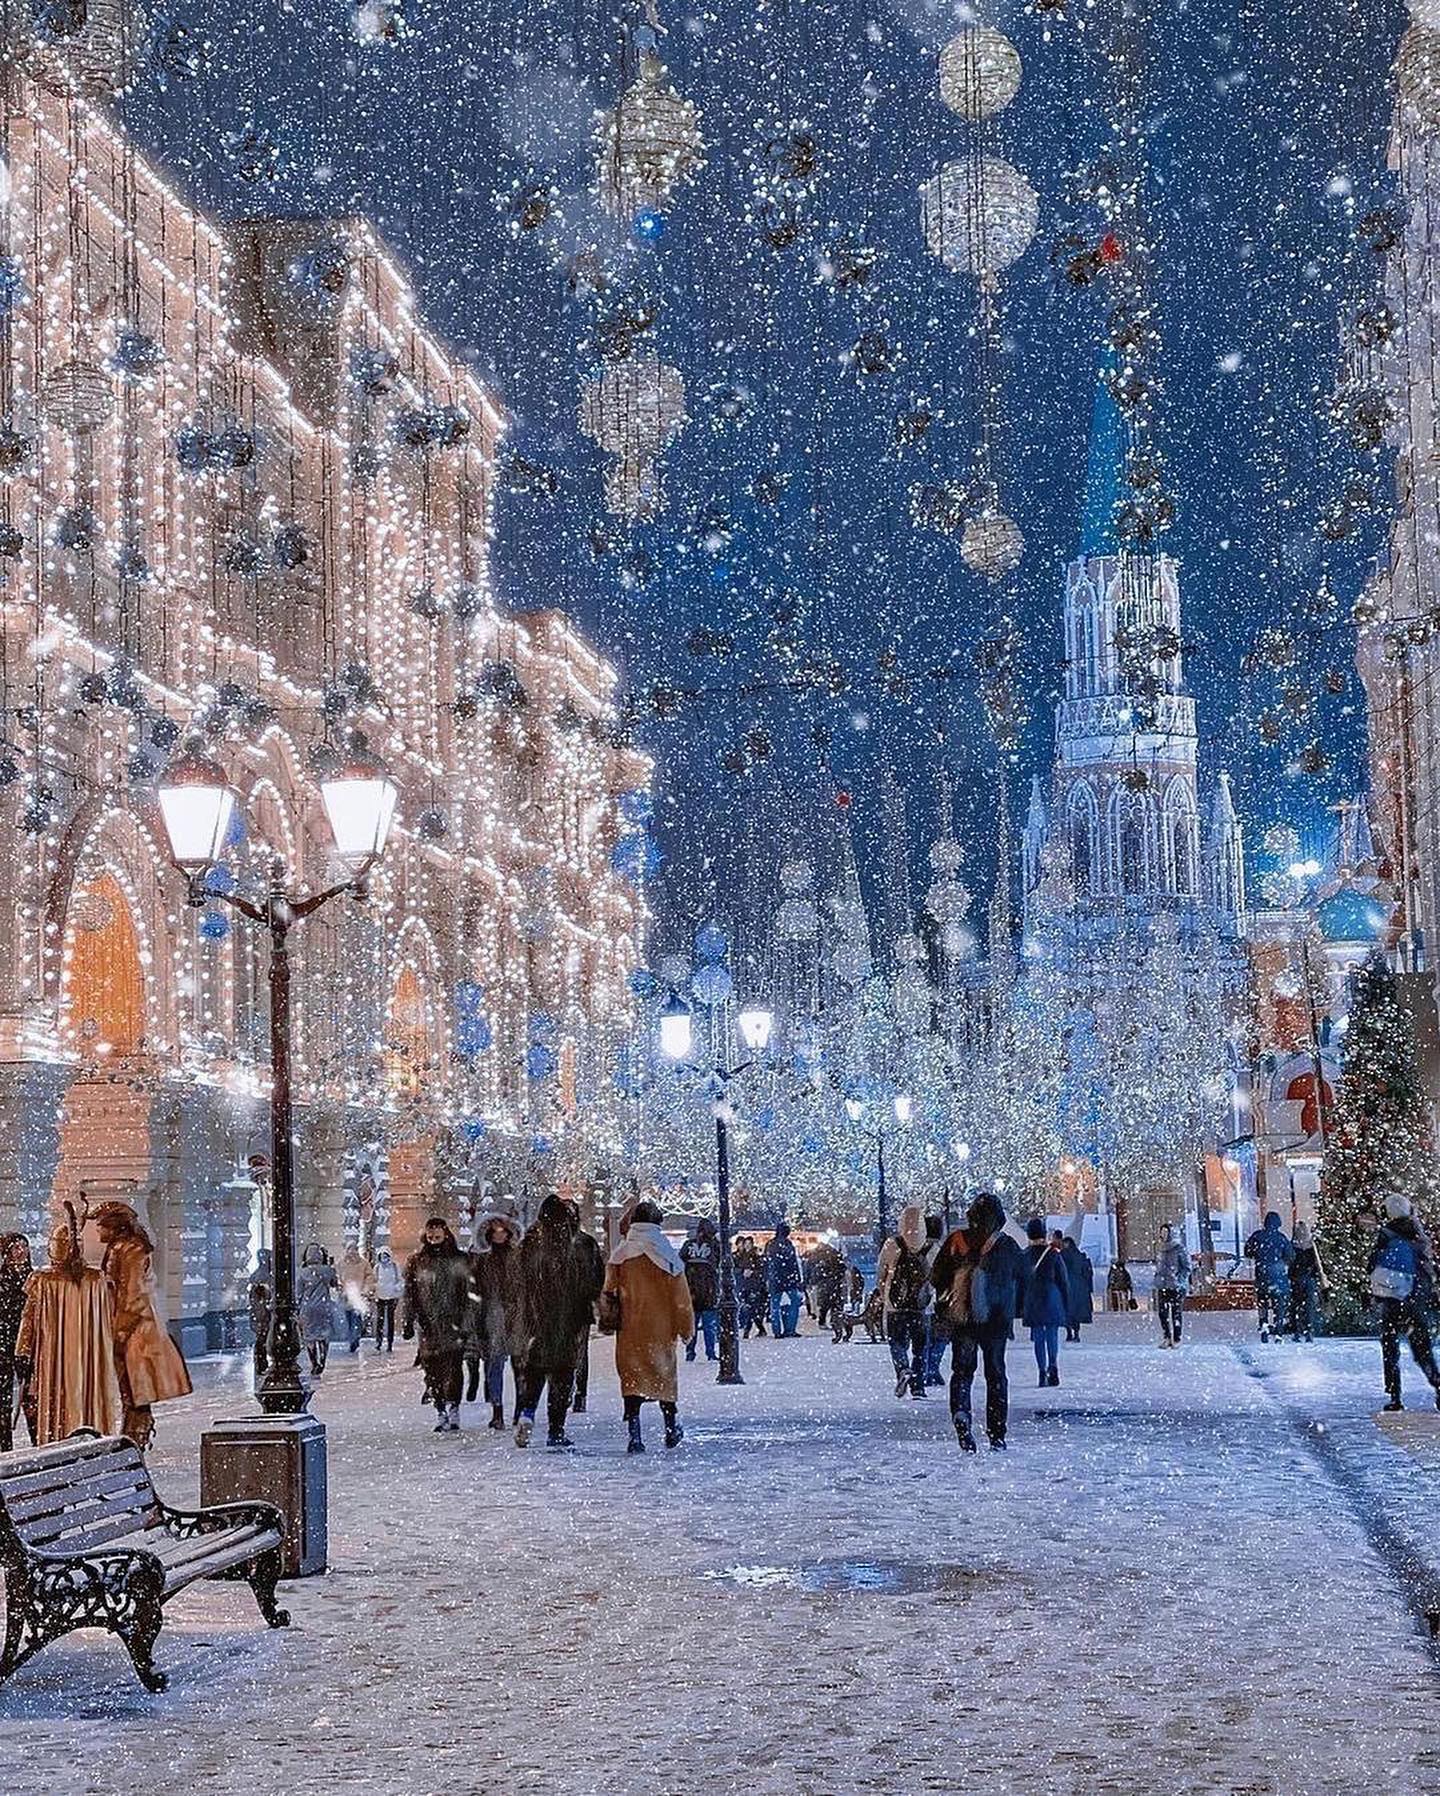 Δημοσιεύτηκε @withregram • @paradise Περπατώντας σε μια χειμερινή χώρα των θαυμάτων. Γεια σας από τη Μόσχα... 1